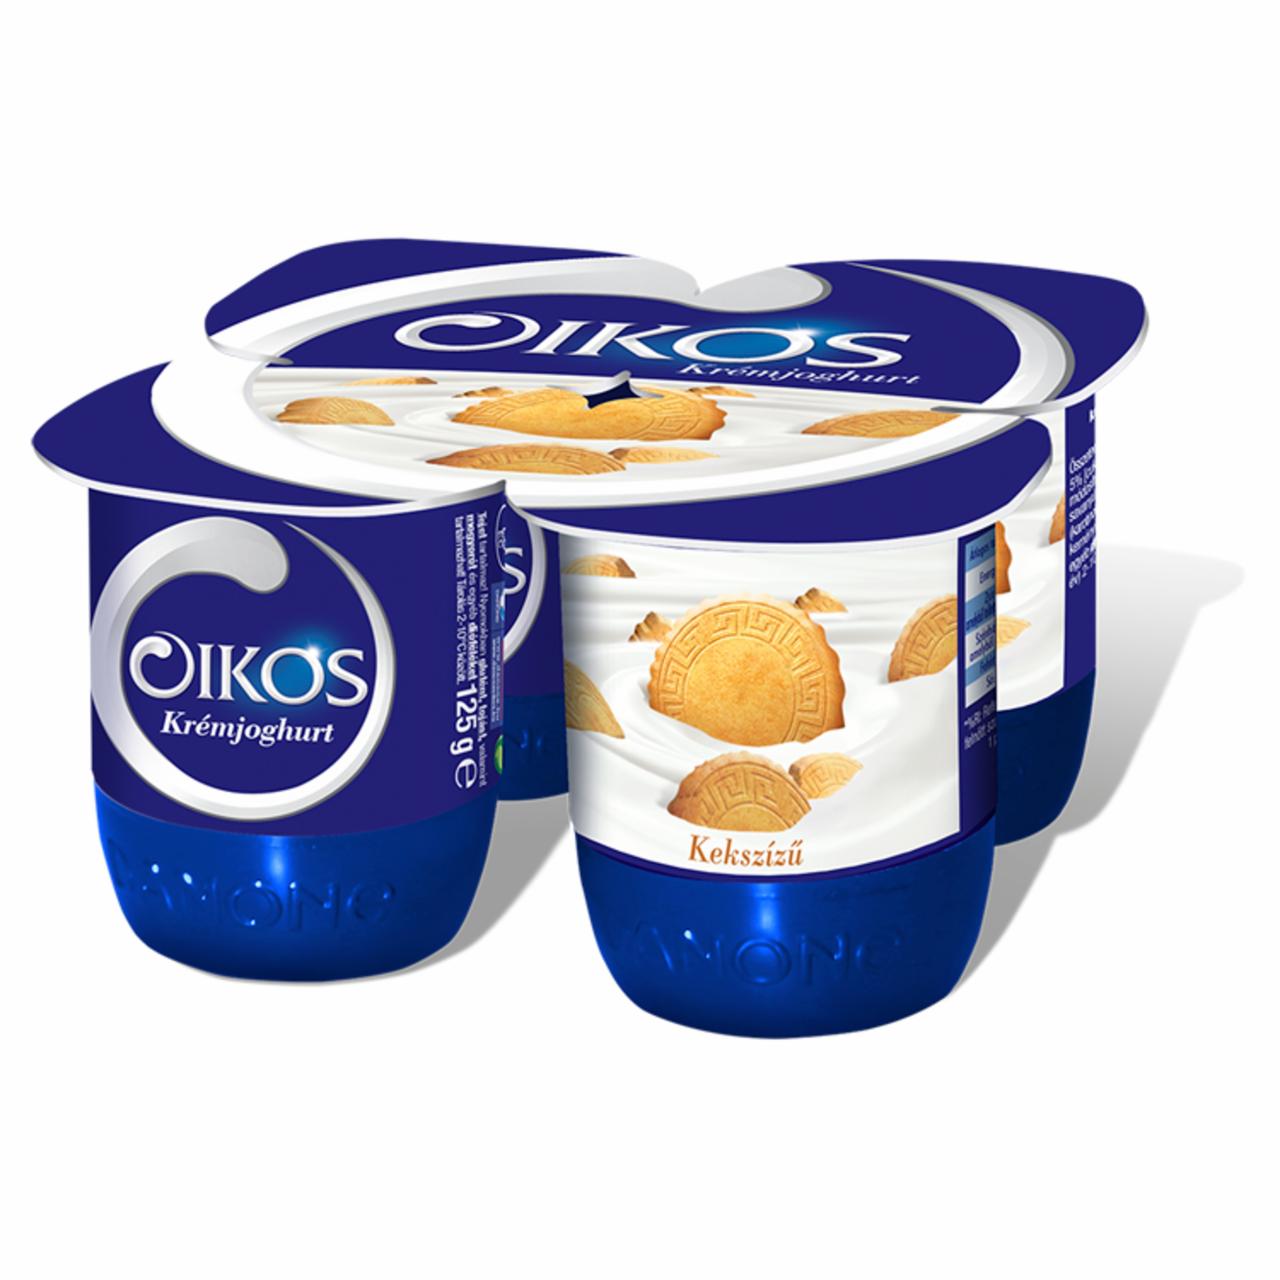 Képek - Danone Oikos Görög kekszízű, élőflórás krémjoghurt 4 x 125 g